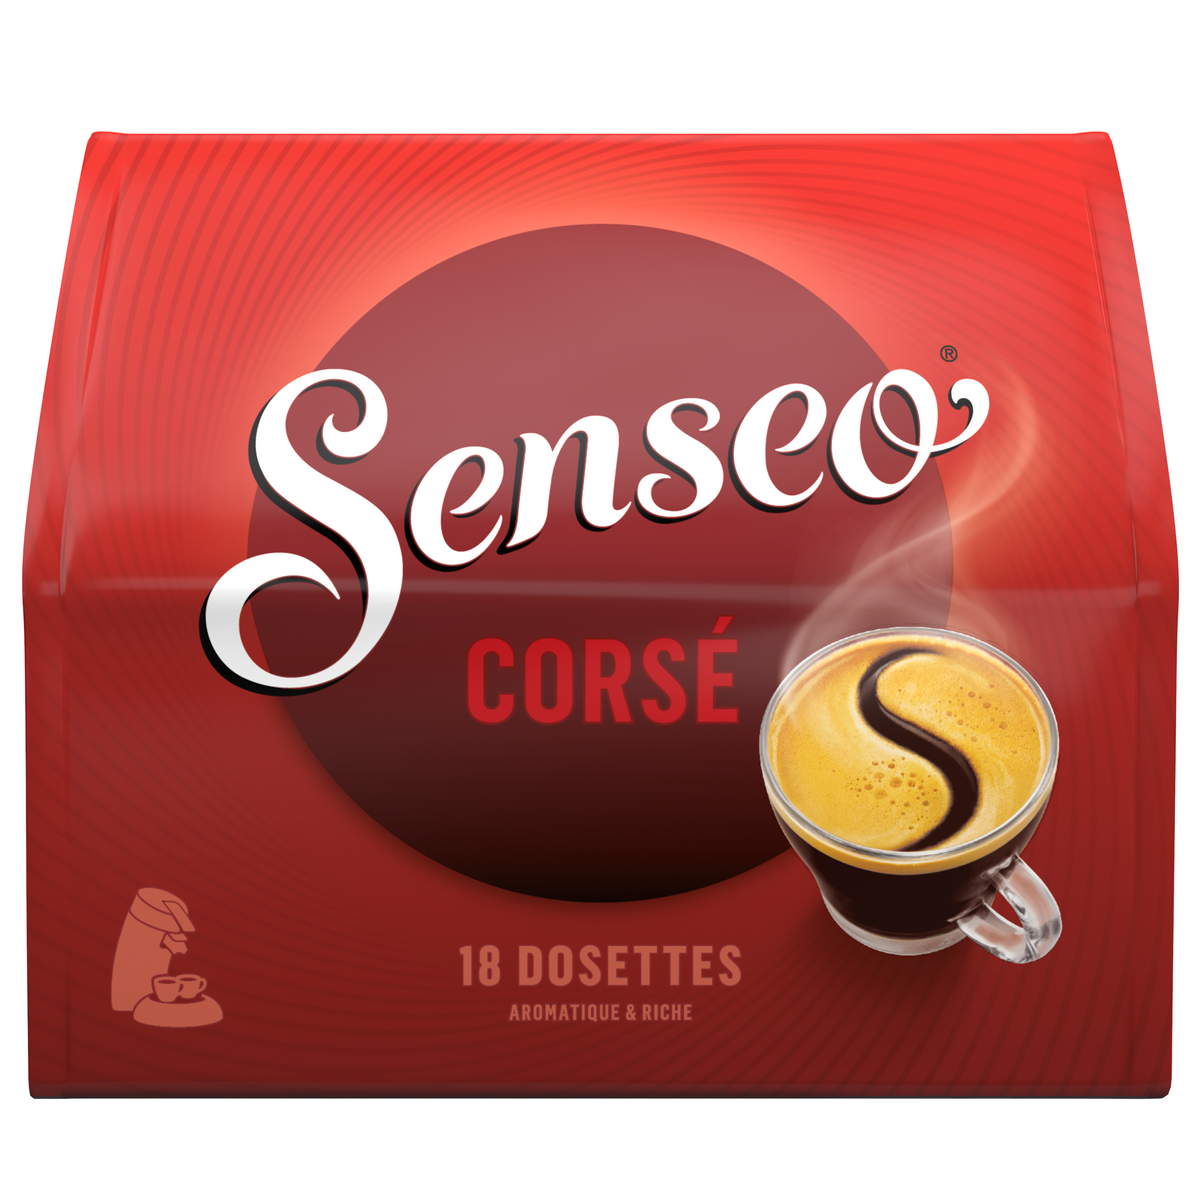 SENSEO Café corsé en dosette 18 dosettes 125g